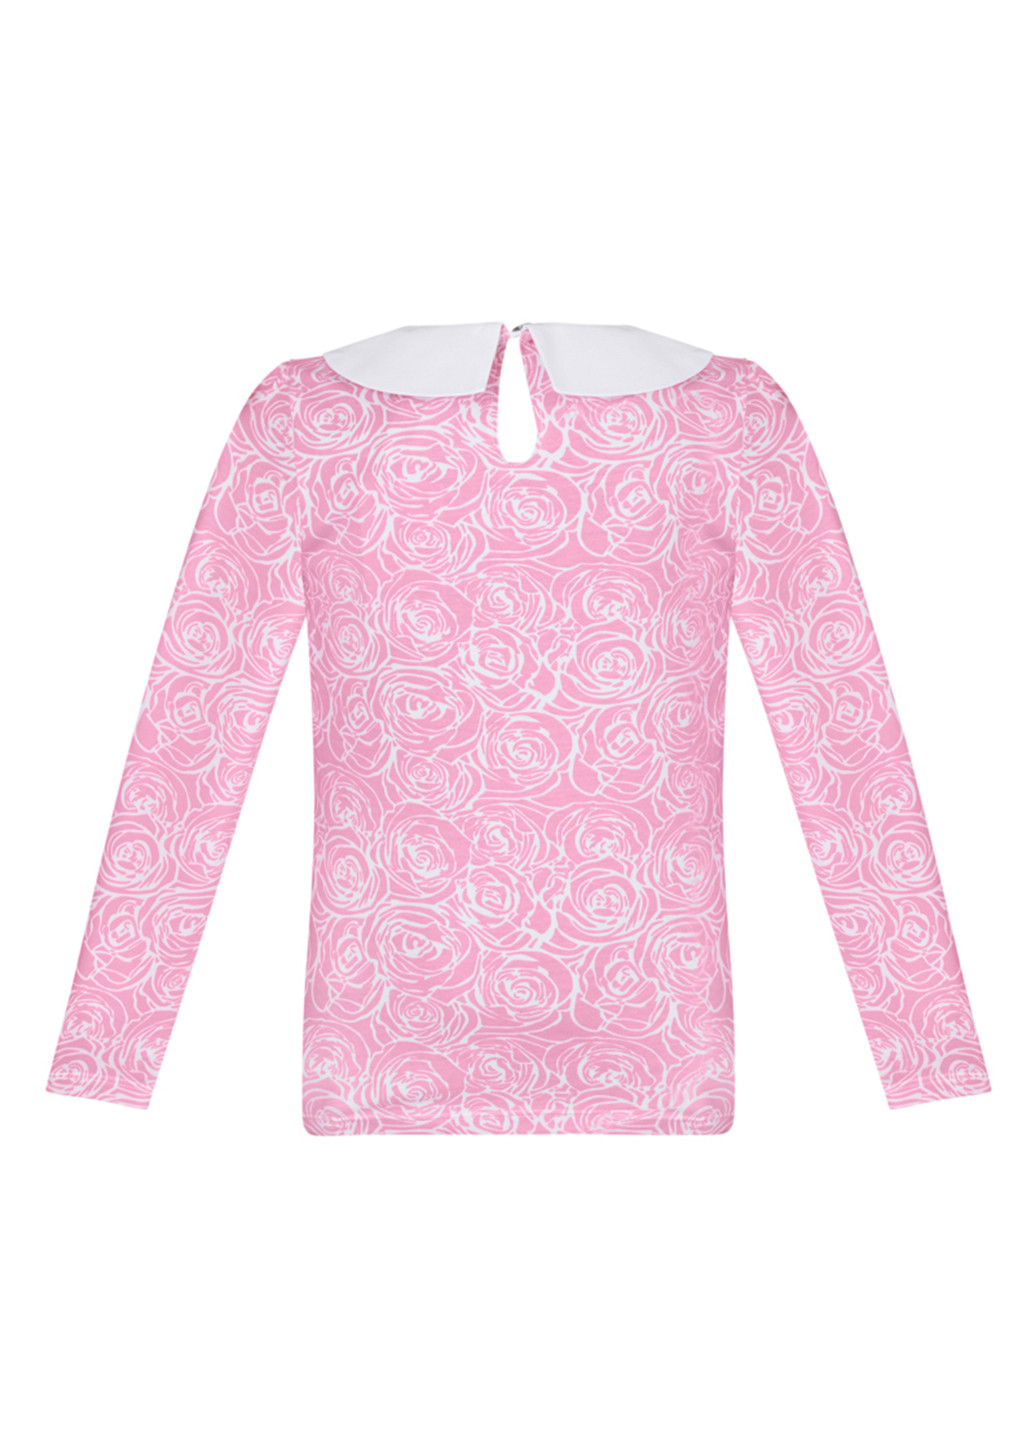 Розовая цветочной расцветки блузка Sasha демисезонная